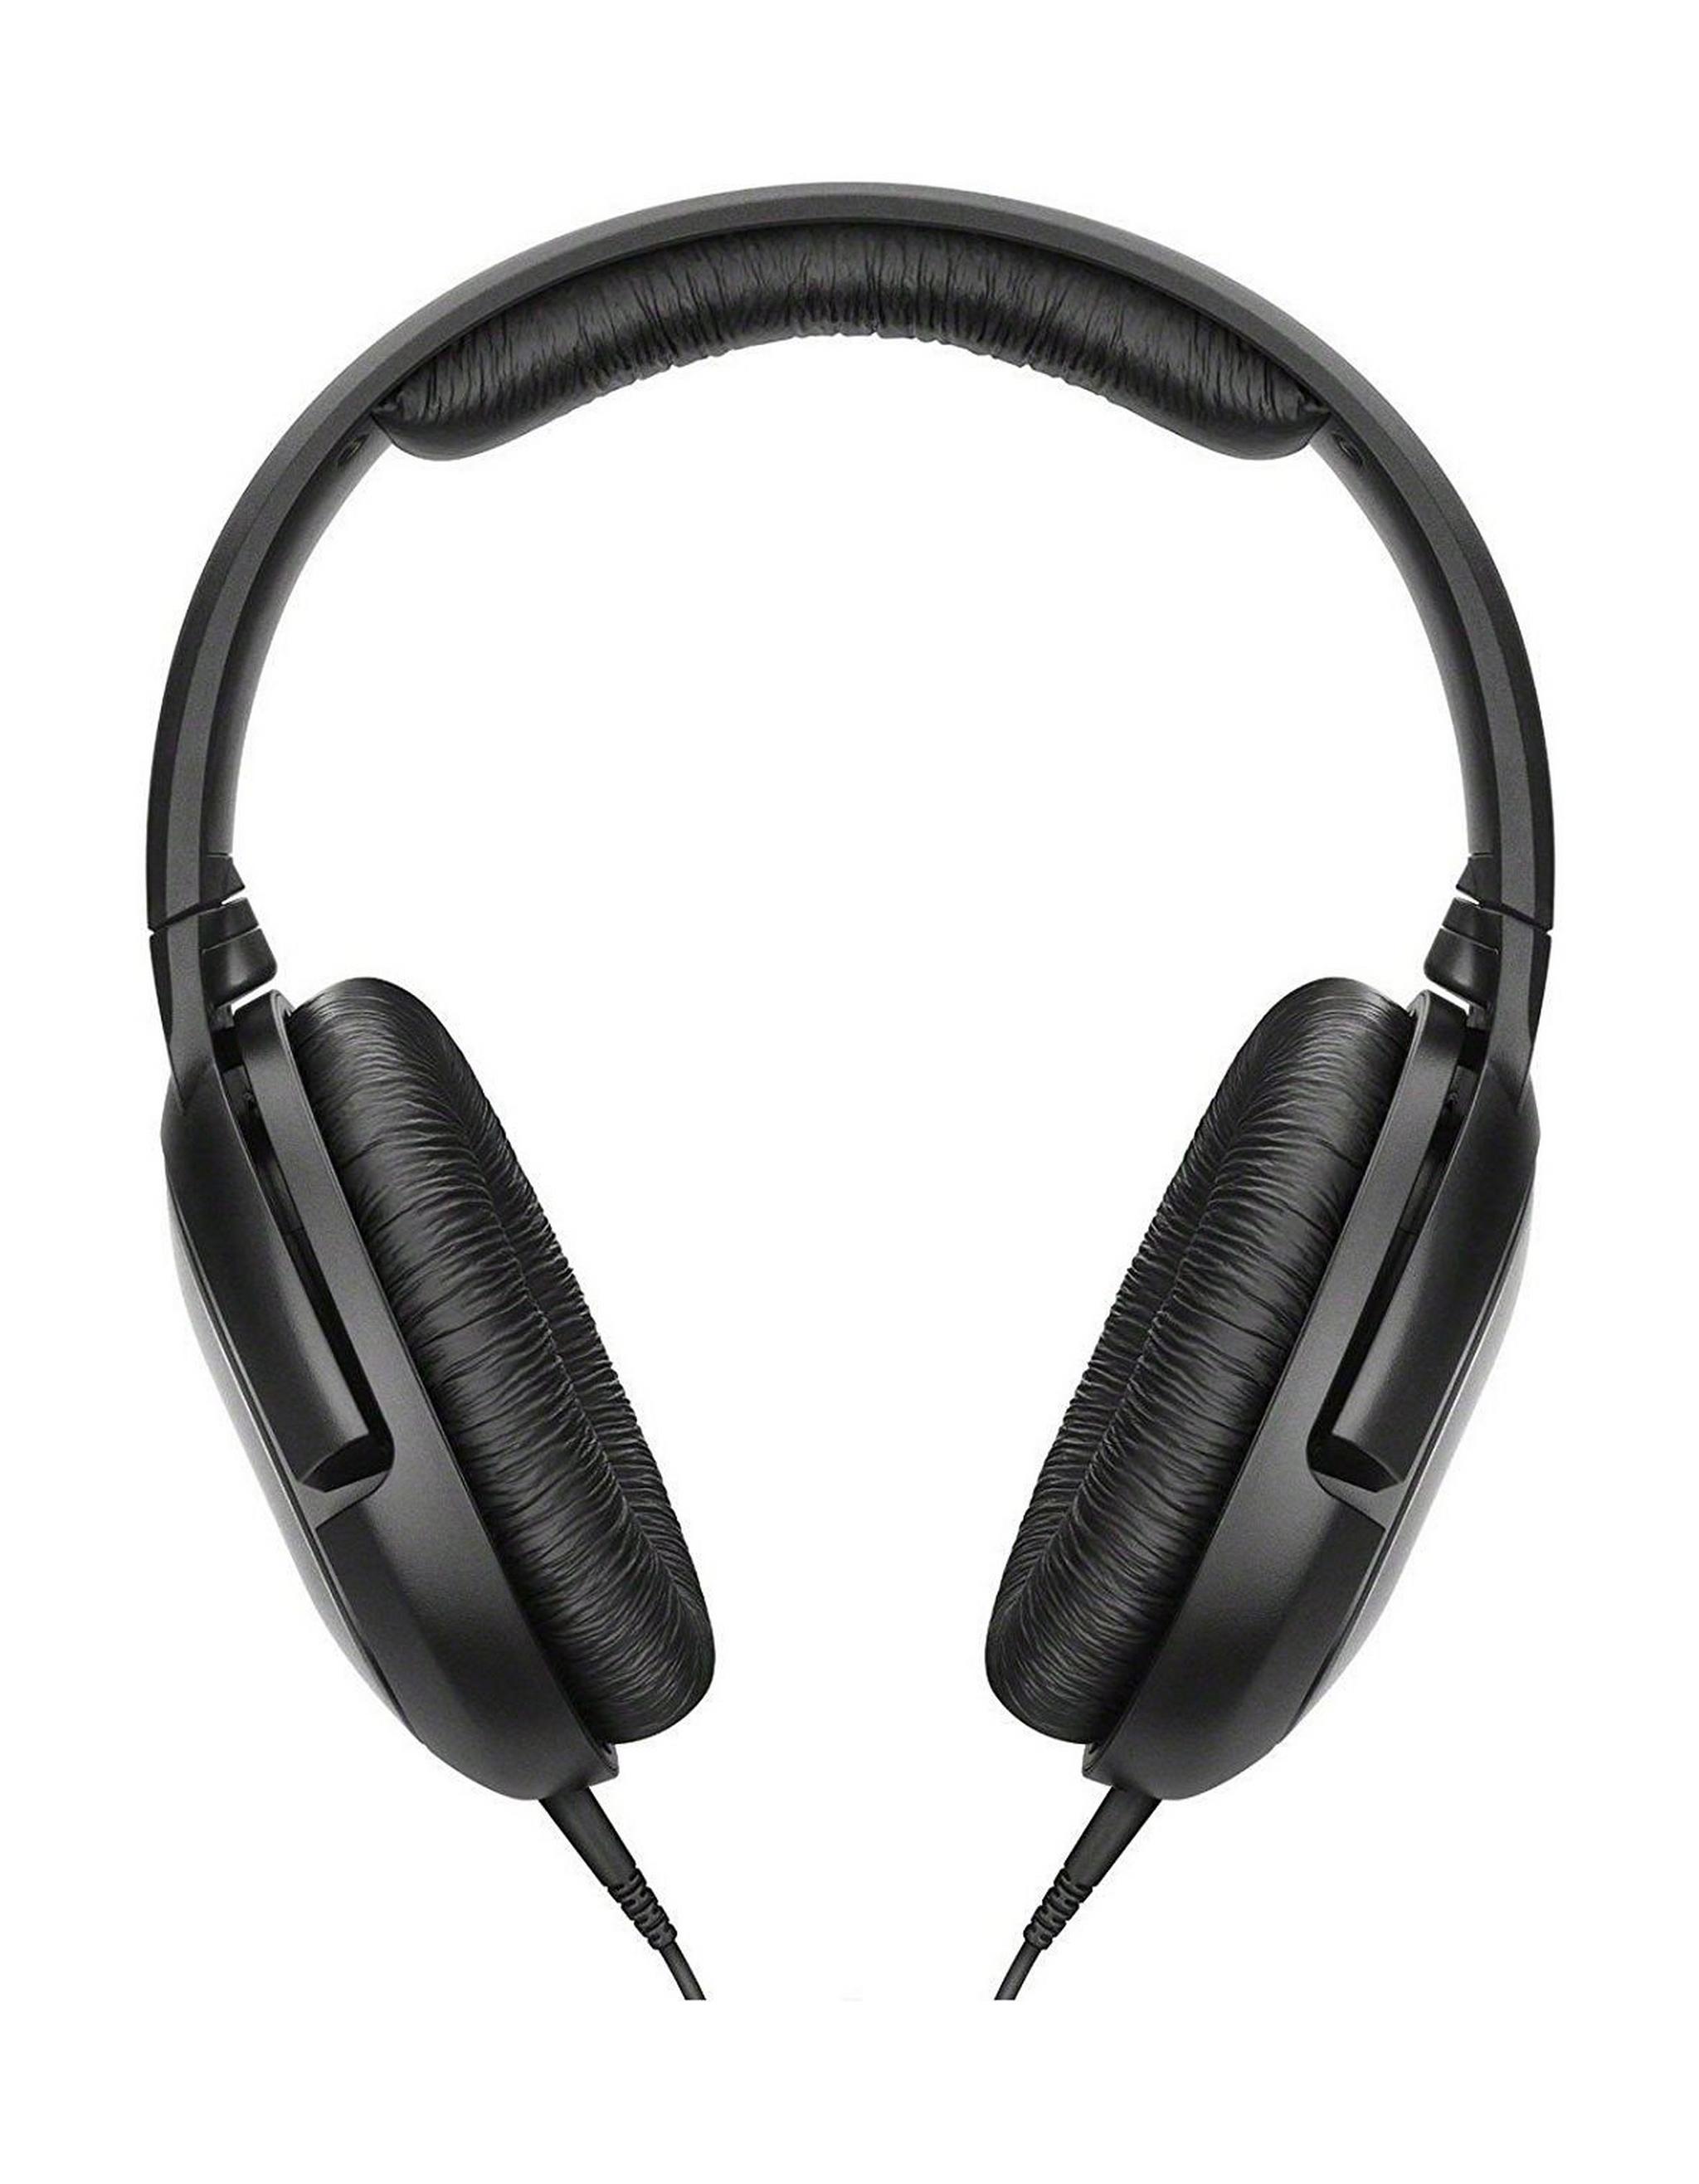 Sennheiser HD 206 Over The Ear Headphone